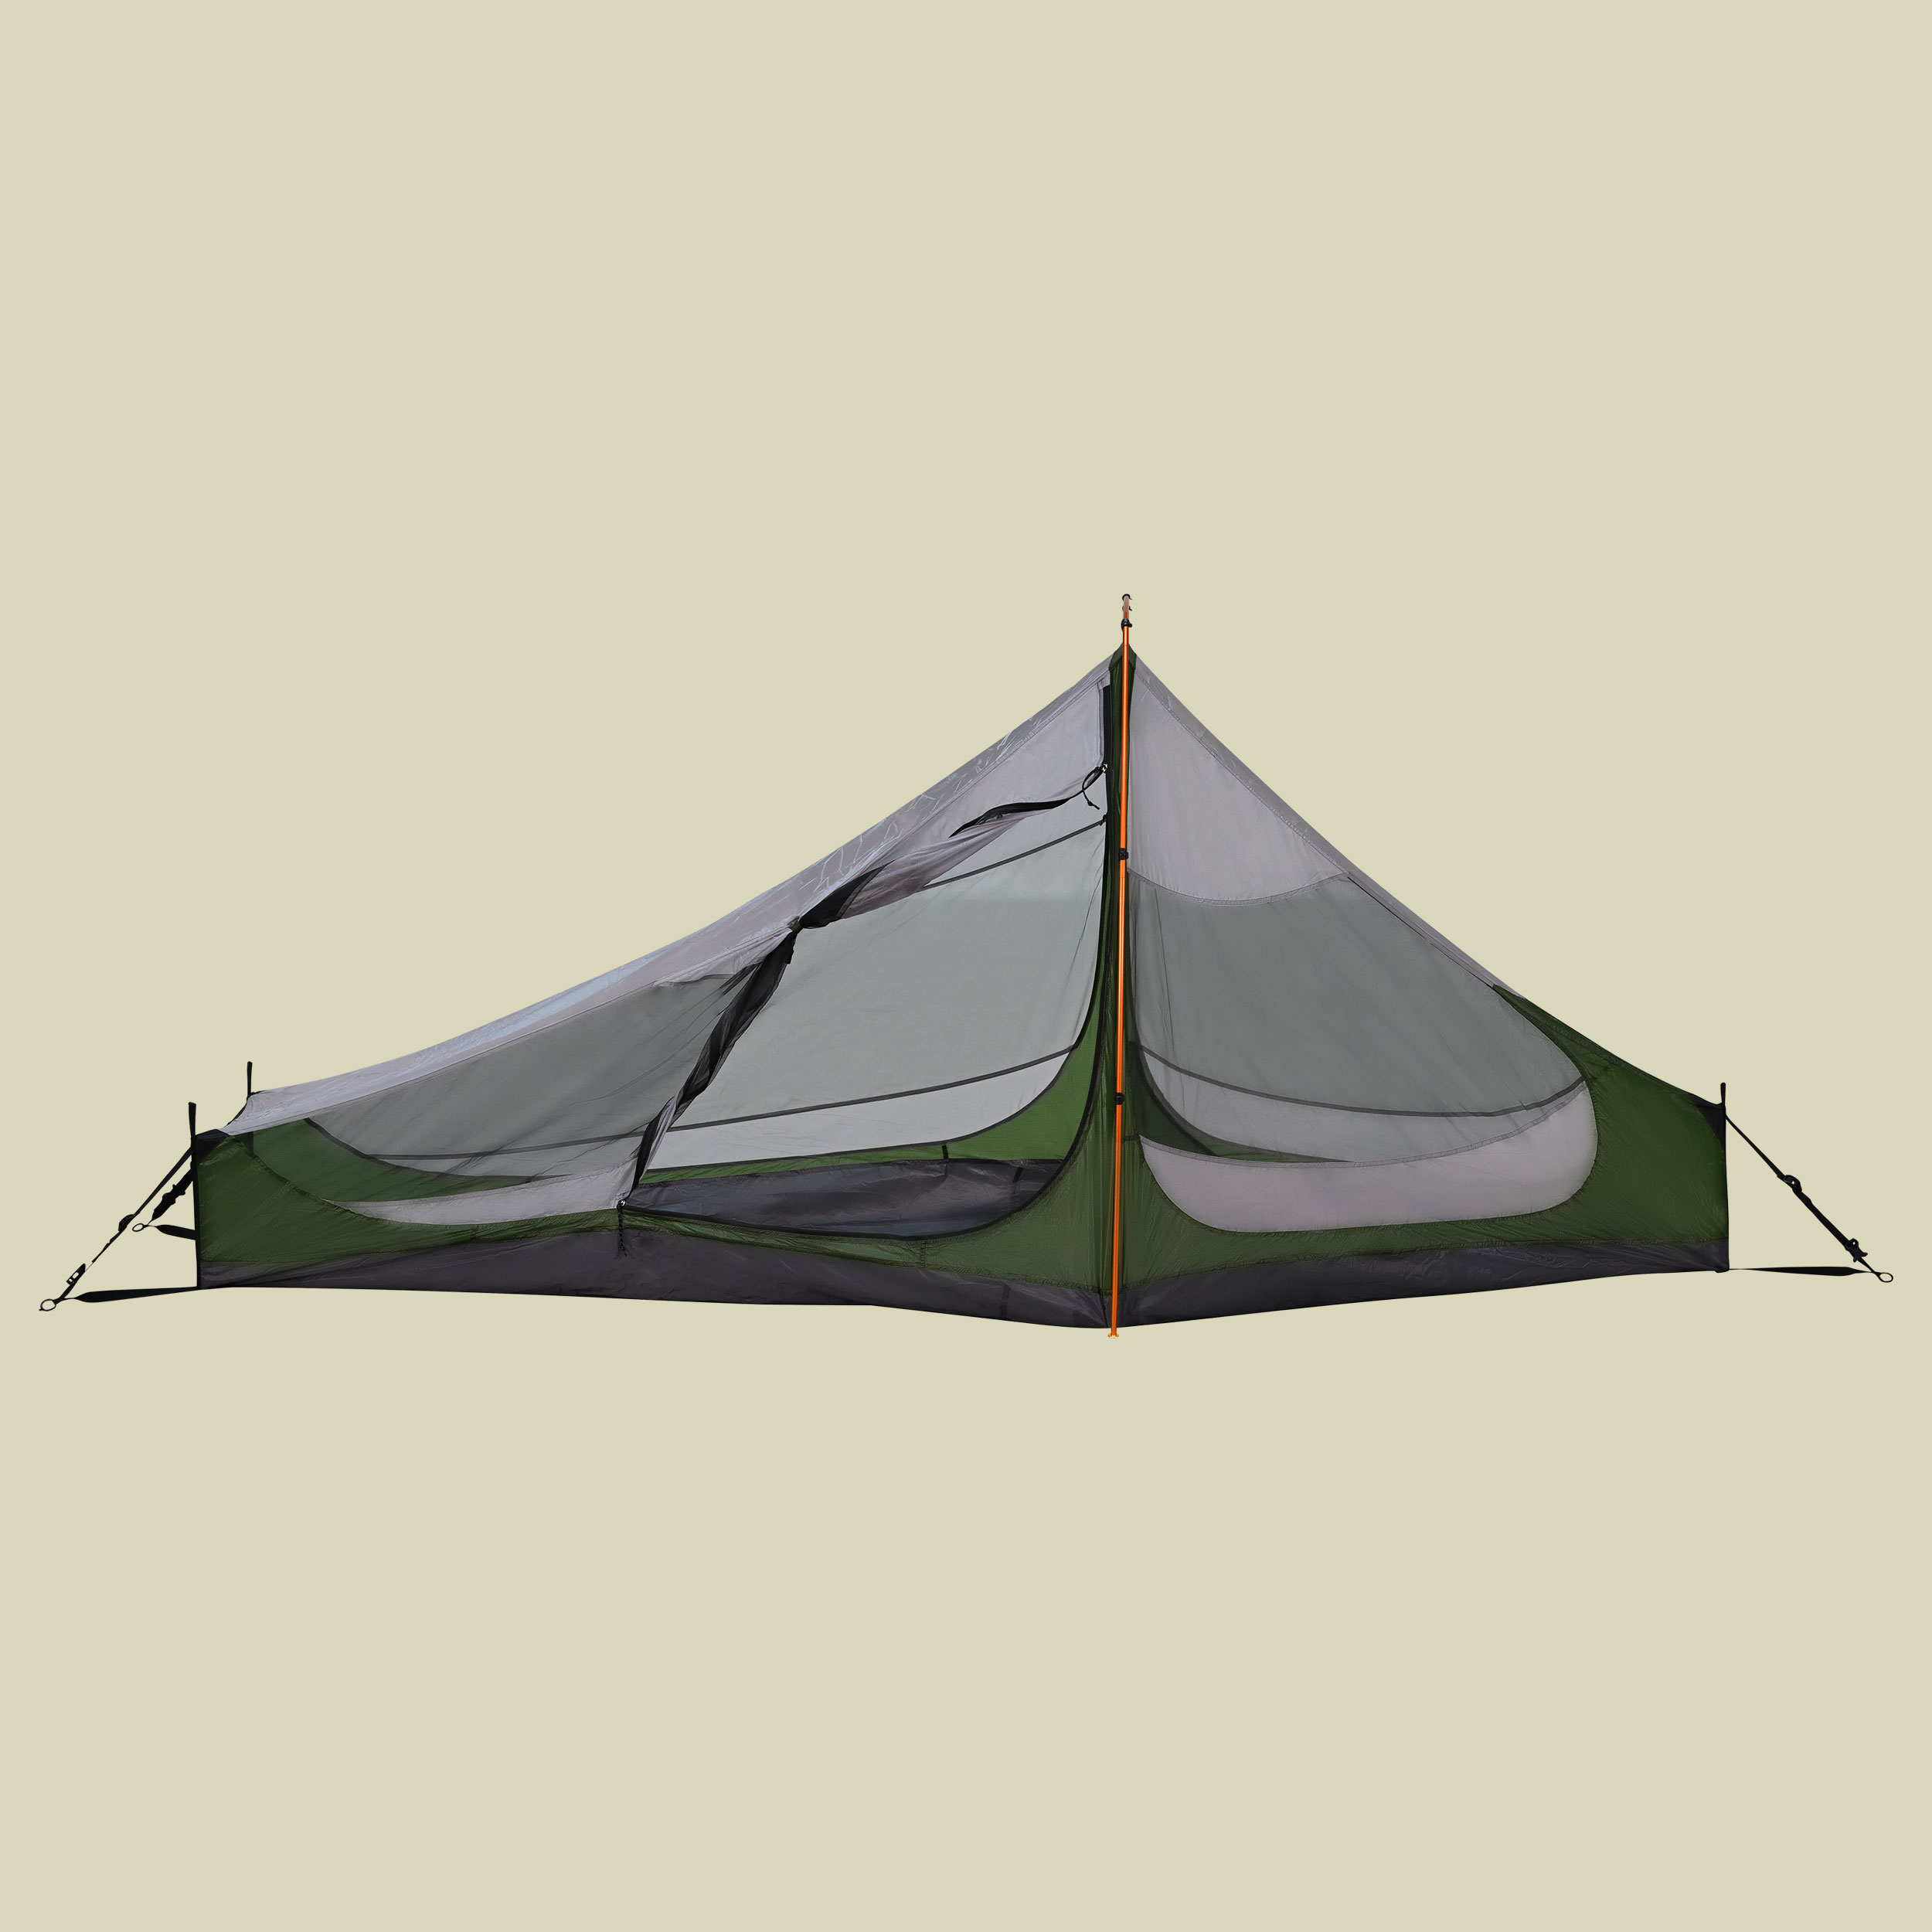 Tent PioPio Solo 1-Personenzelt Farbe willow bough green